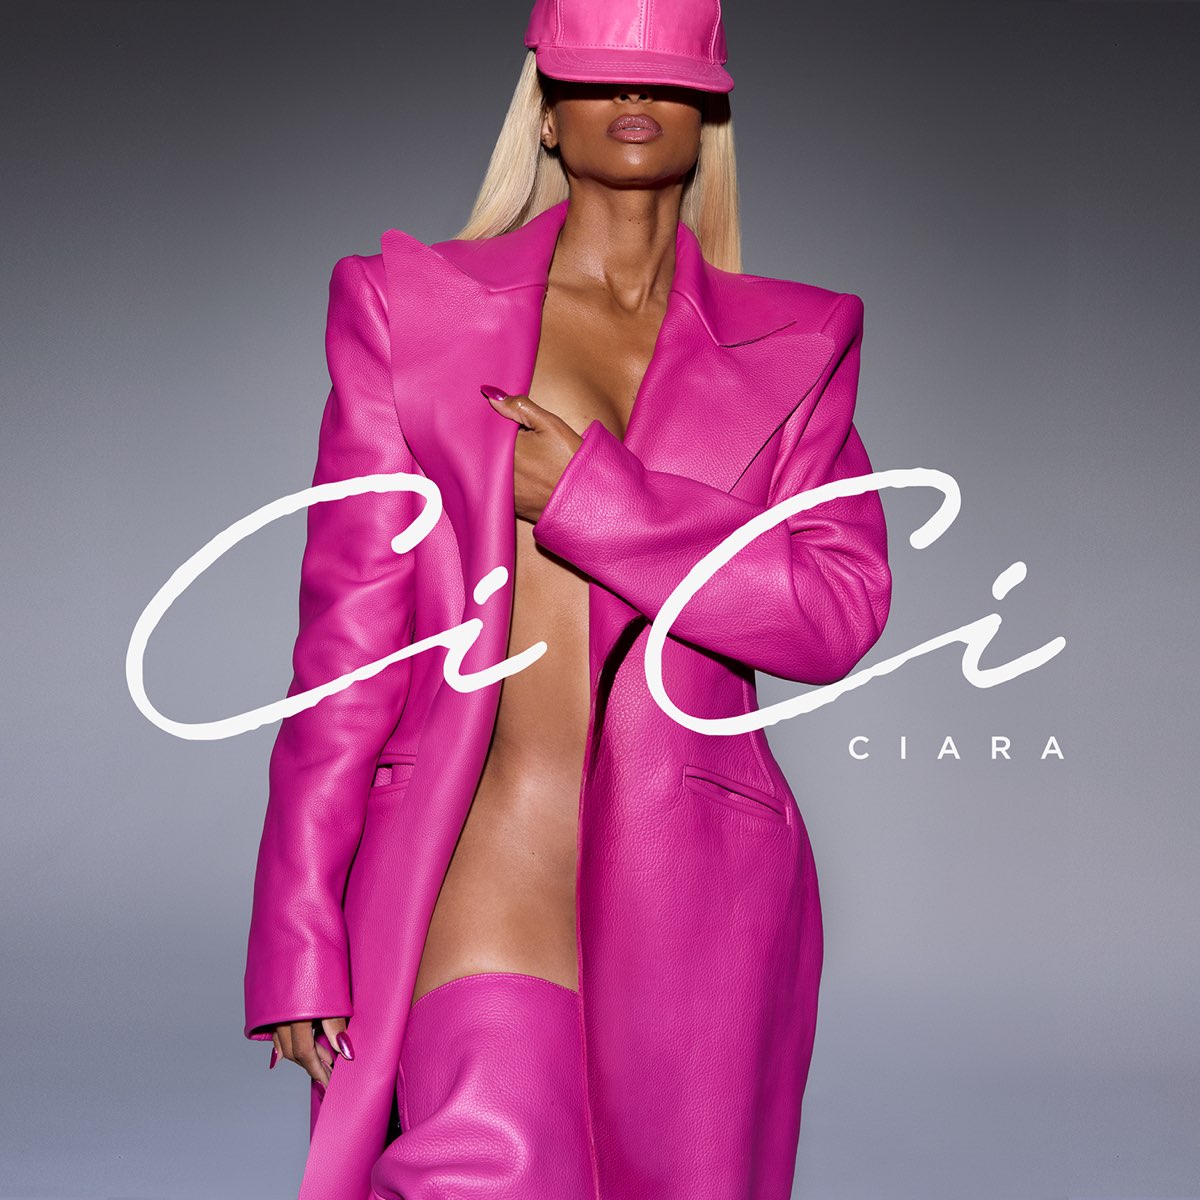 Ciara CiCi cover artwork